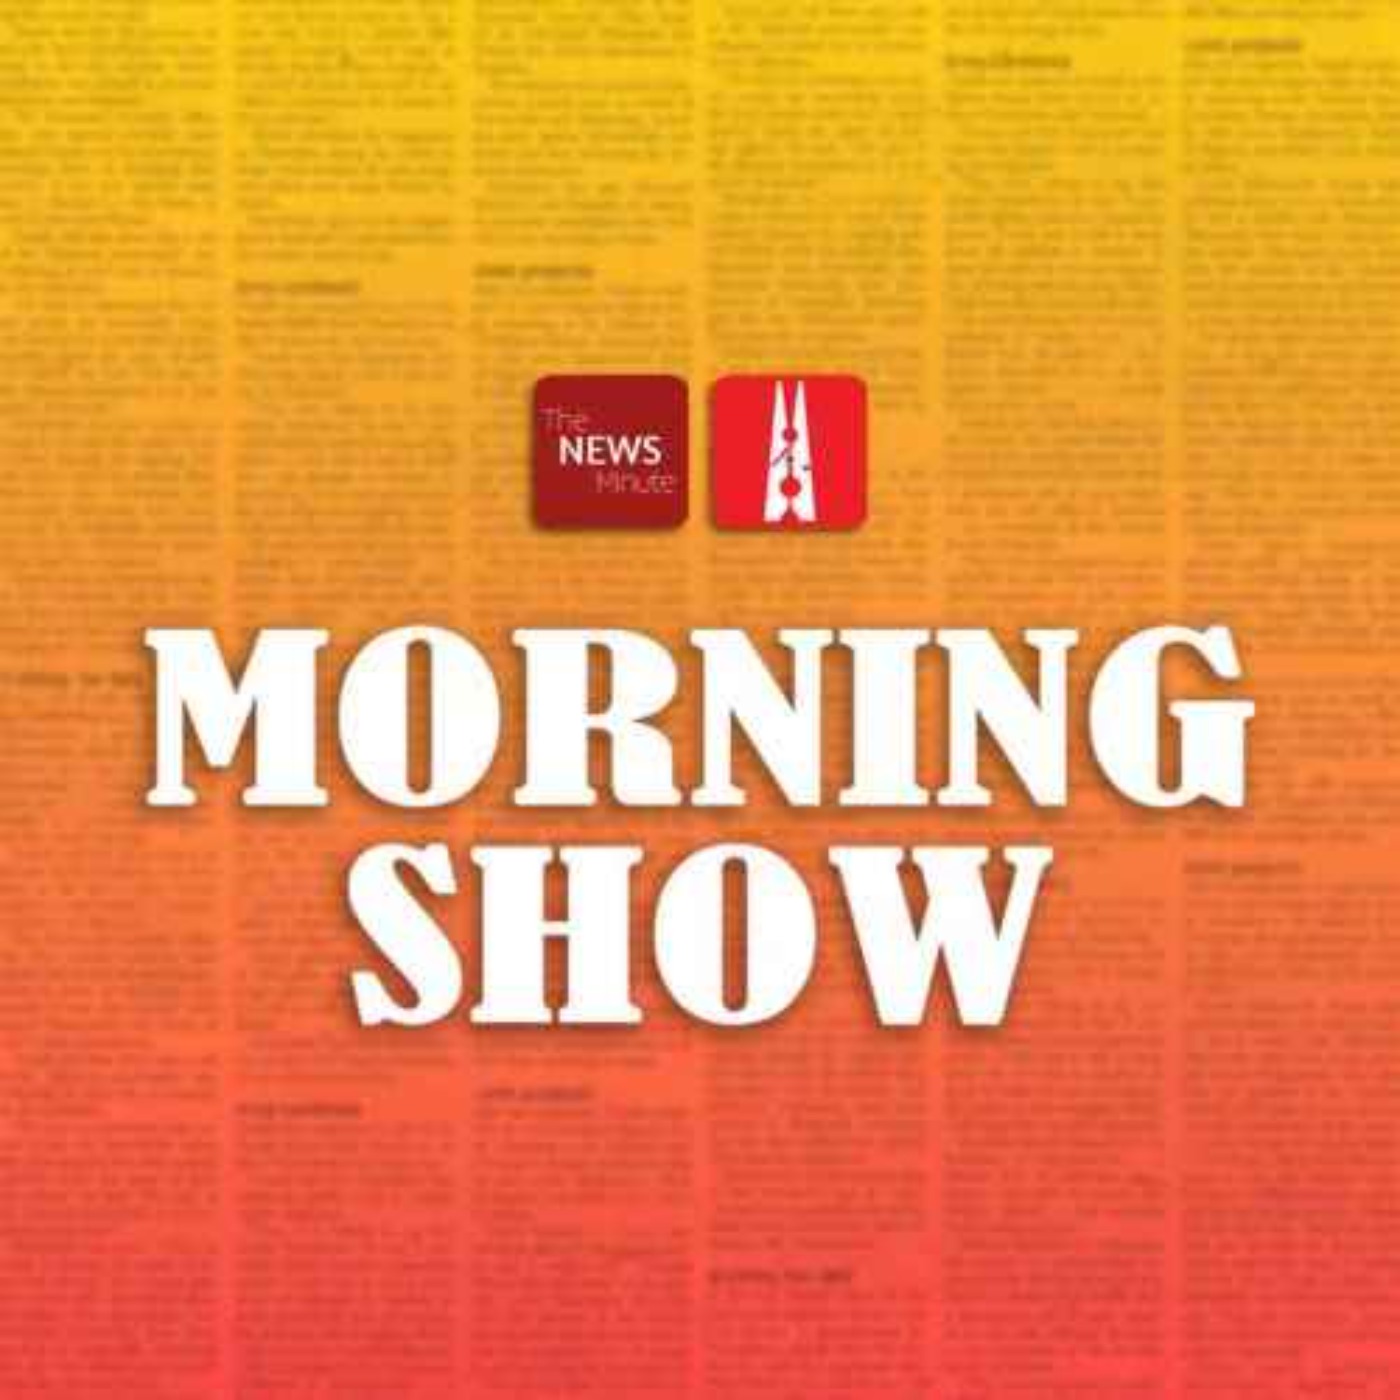 मॉर्निंग शो: ‘मुफ्त’ की घोषणाओं और ‘कभी न पूरे होने वाले’ चुनावी वादों पर क्या सोचता है मध्य प्रदेश का युवा?